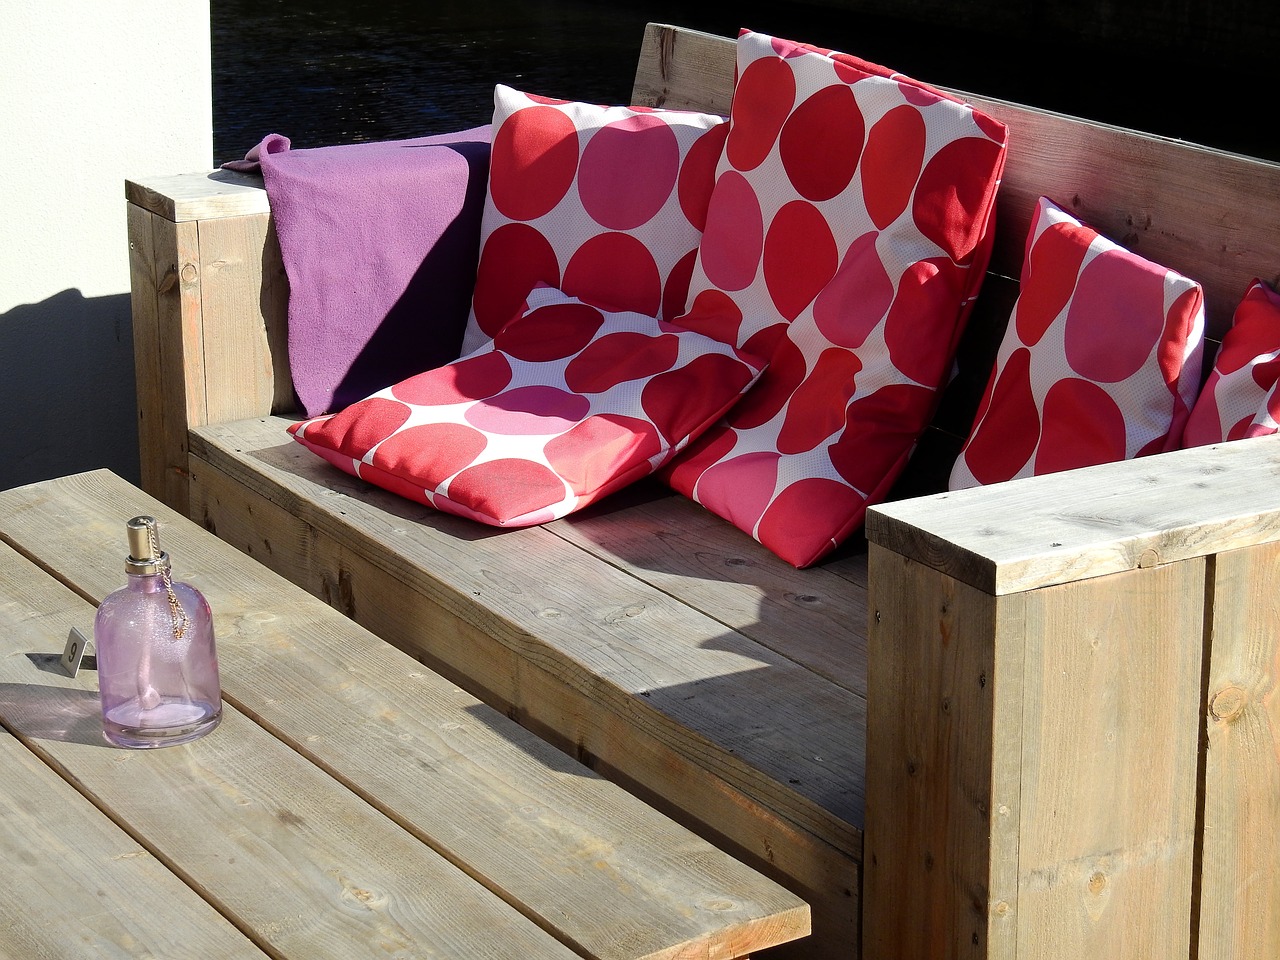 Kolorowe poduszki na balkon, taras, ławkę, oparcie, krzesło, pufę, wersalkę.